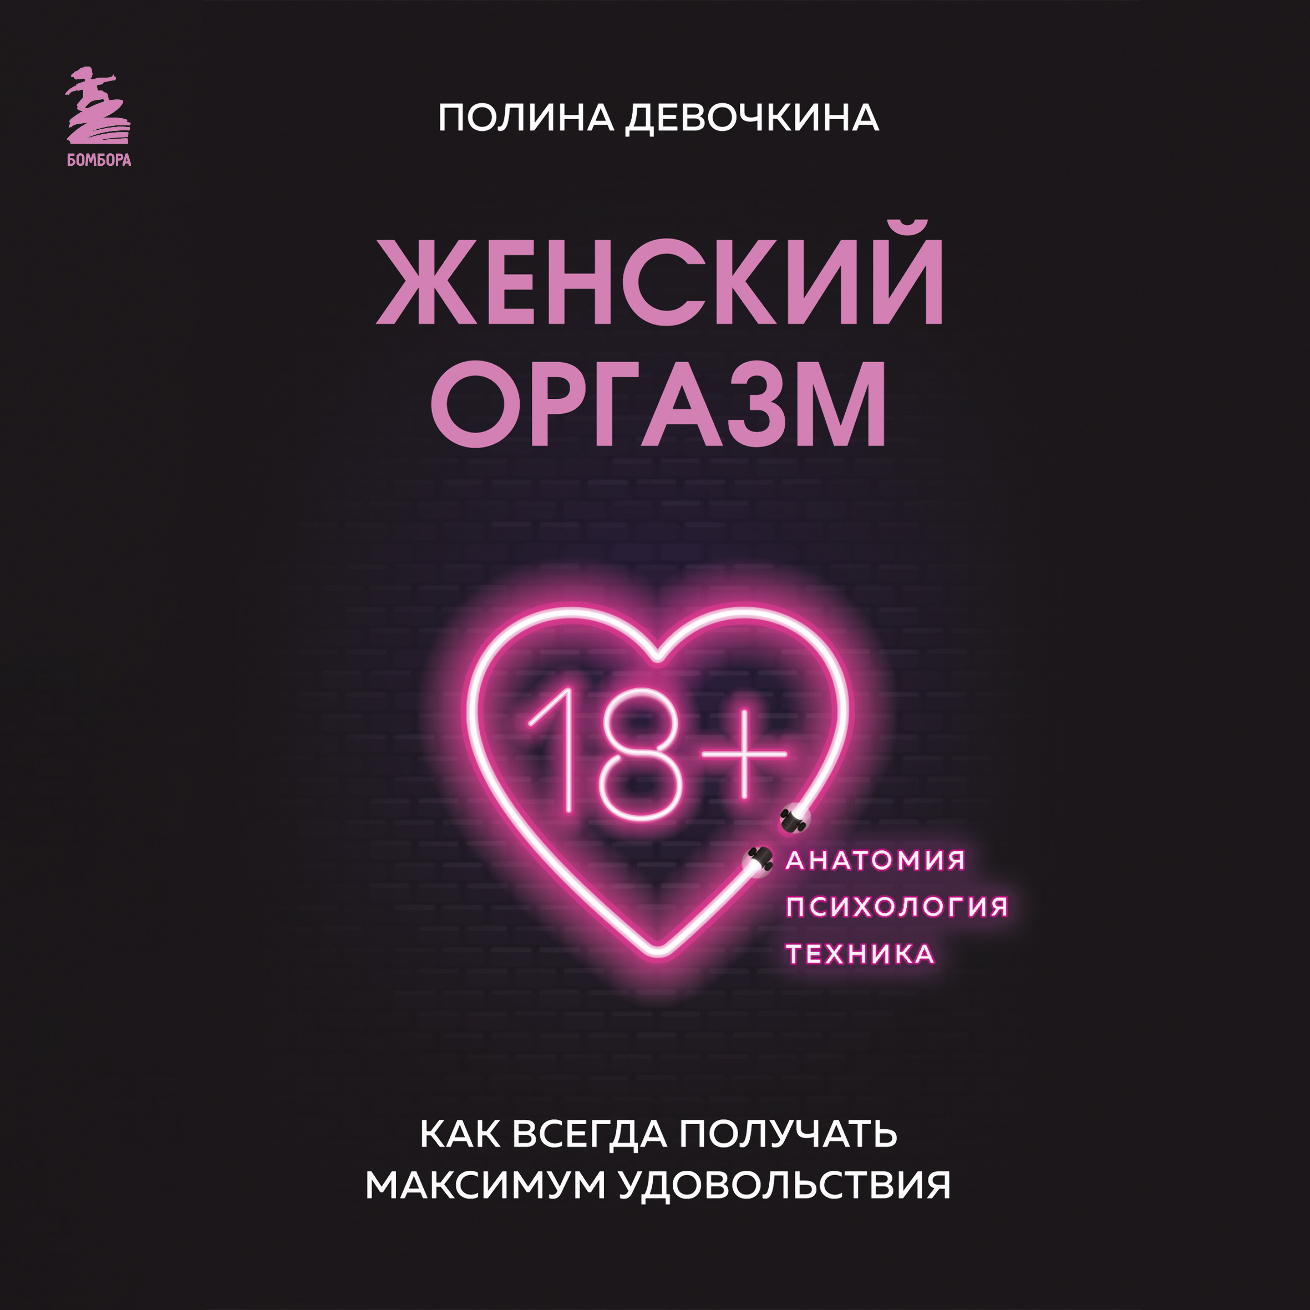 Женский оргазм: русские девушки и женщины кончают на видео [новые видео]